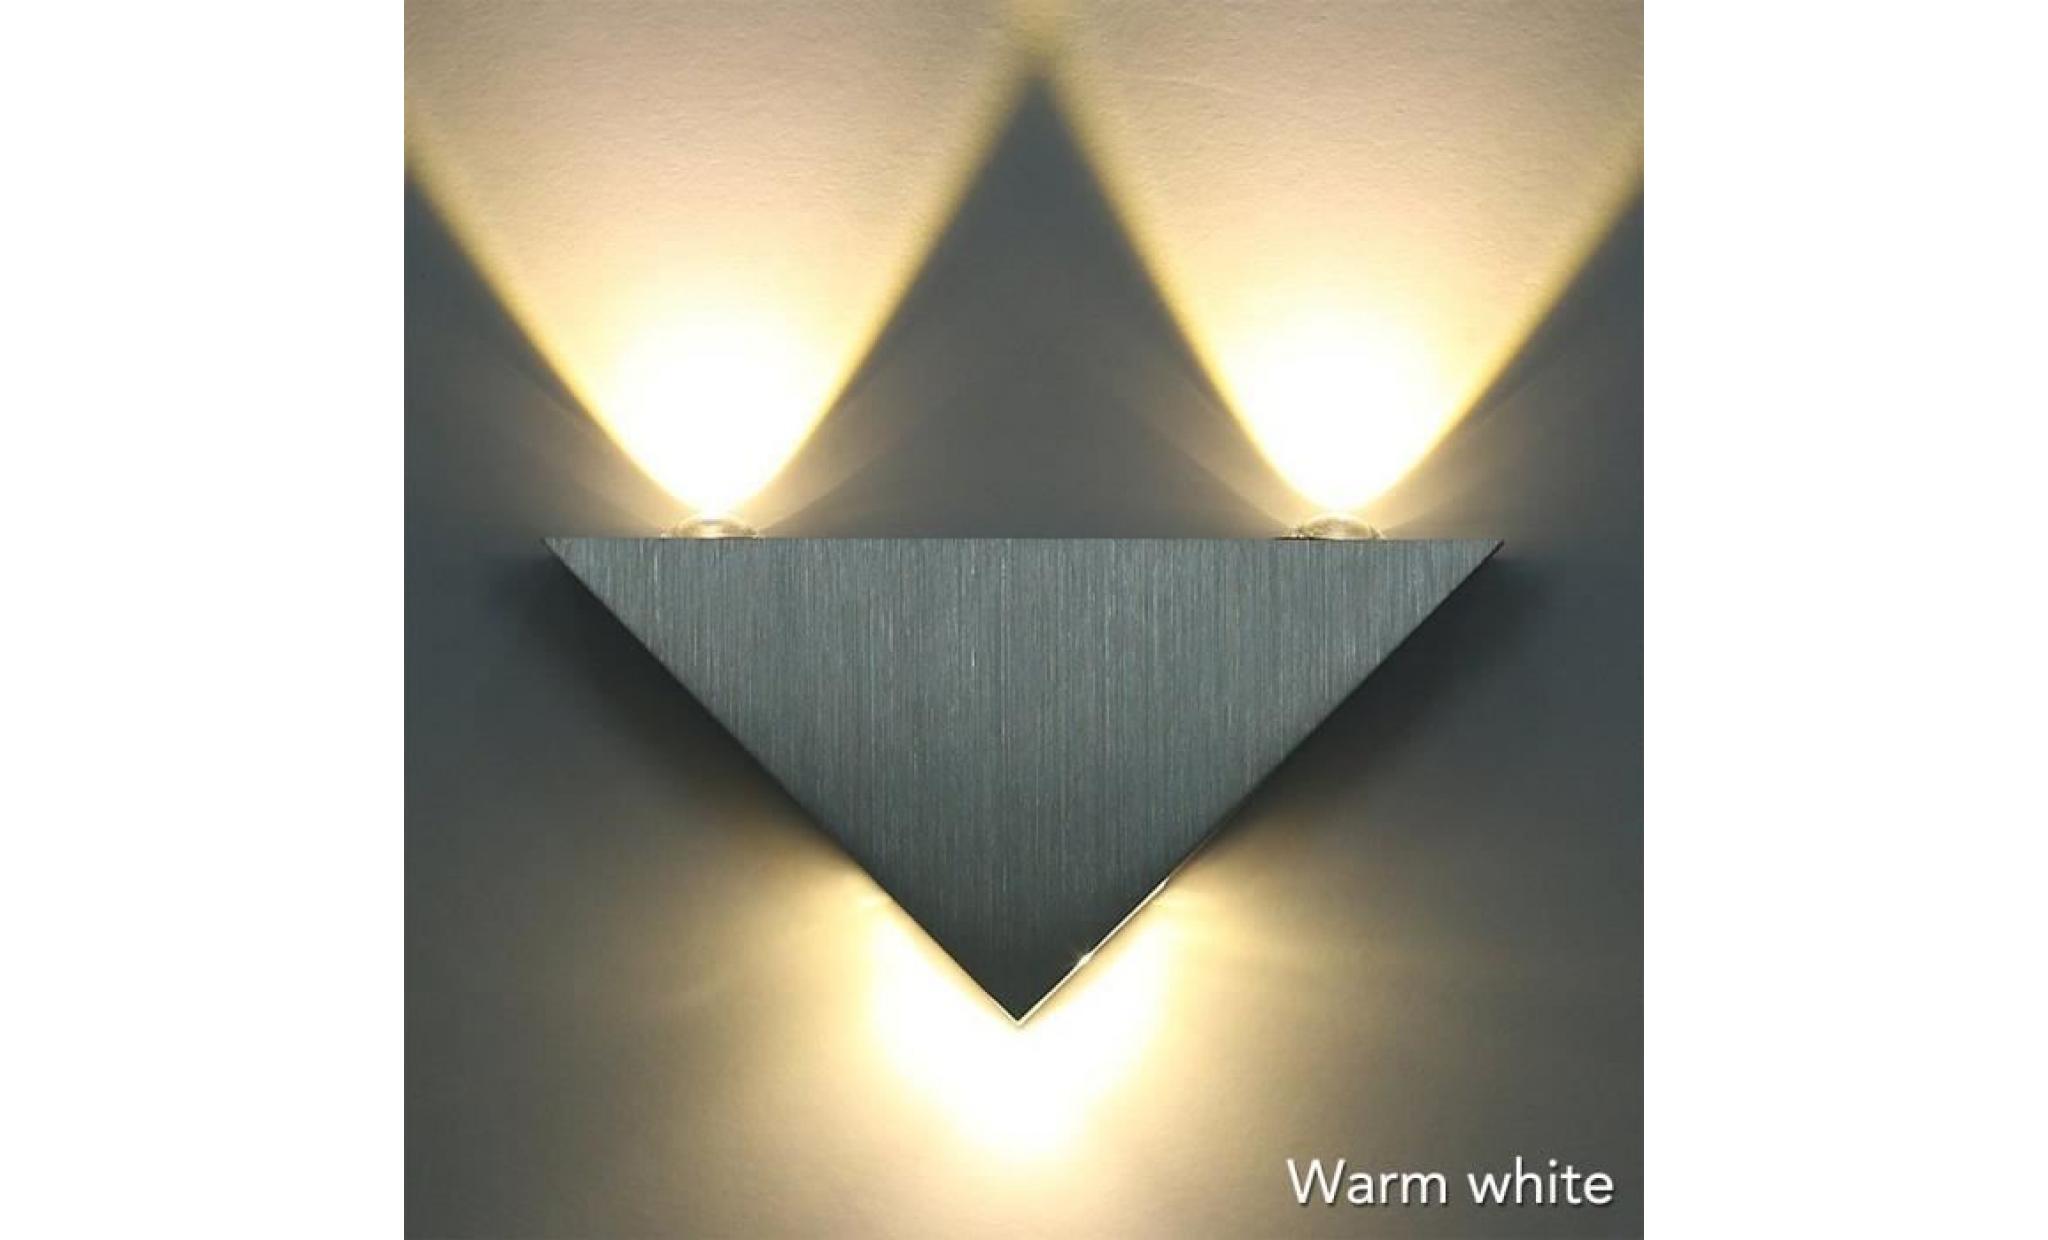 applique de triangle, applique murale led blanc chaud lampe hall couloir ktv, lumières décoratives led